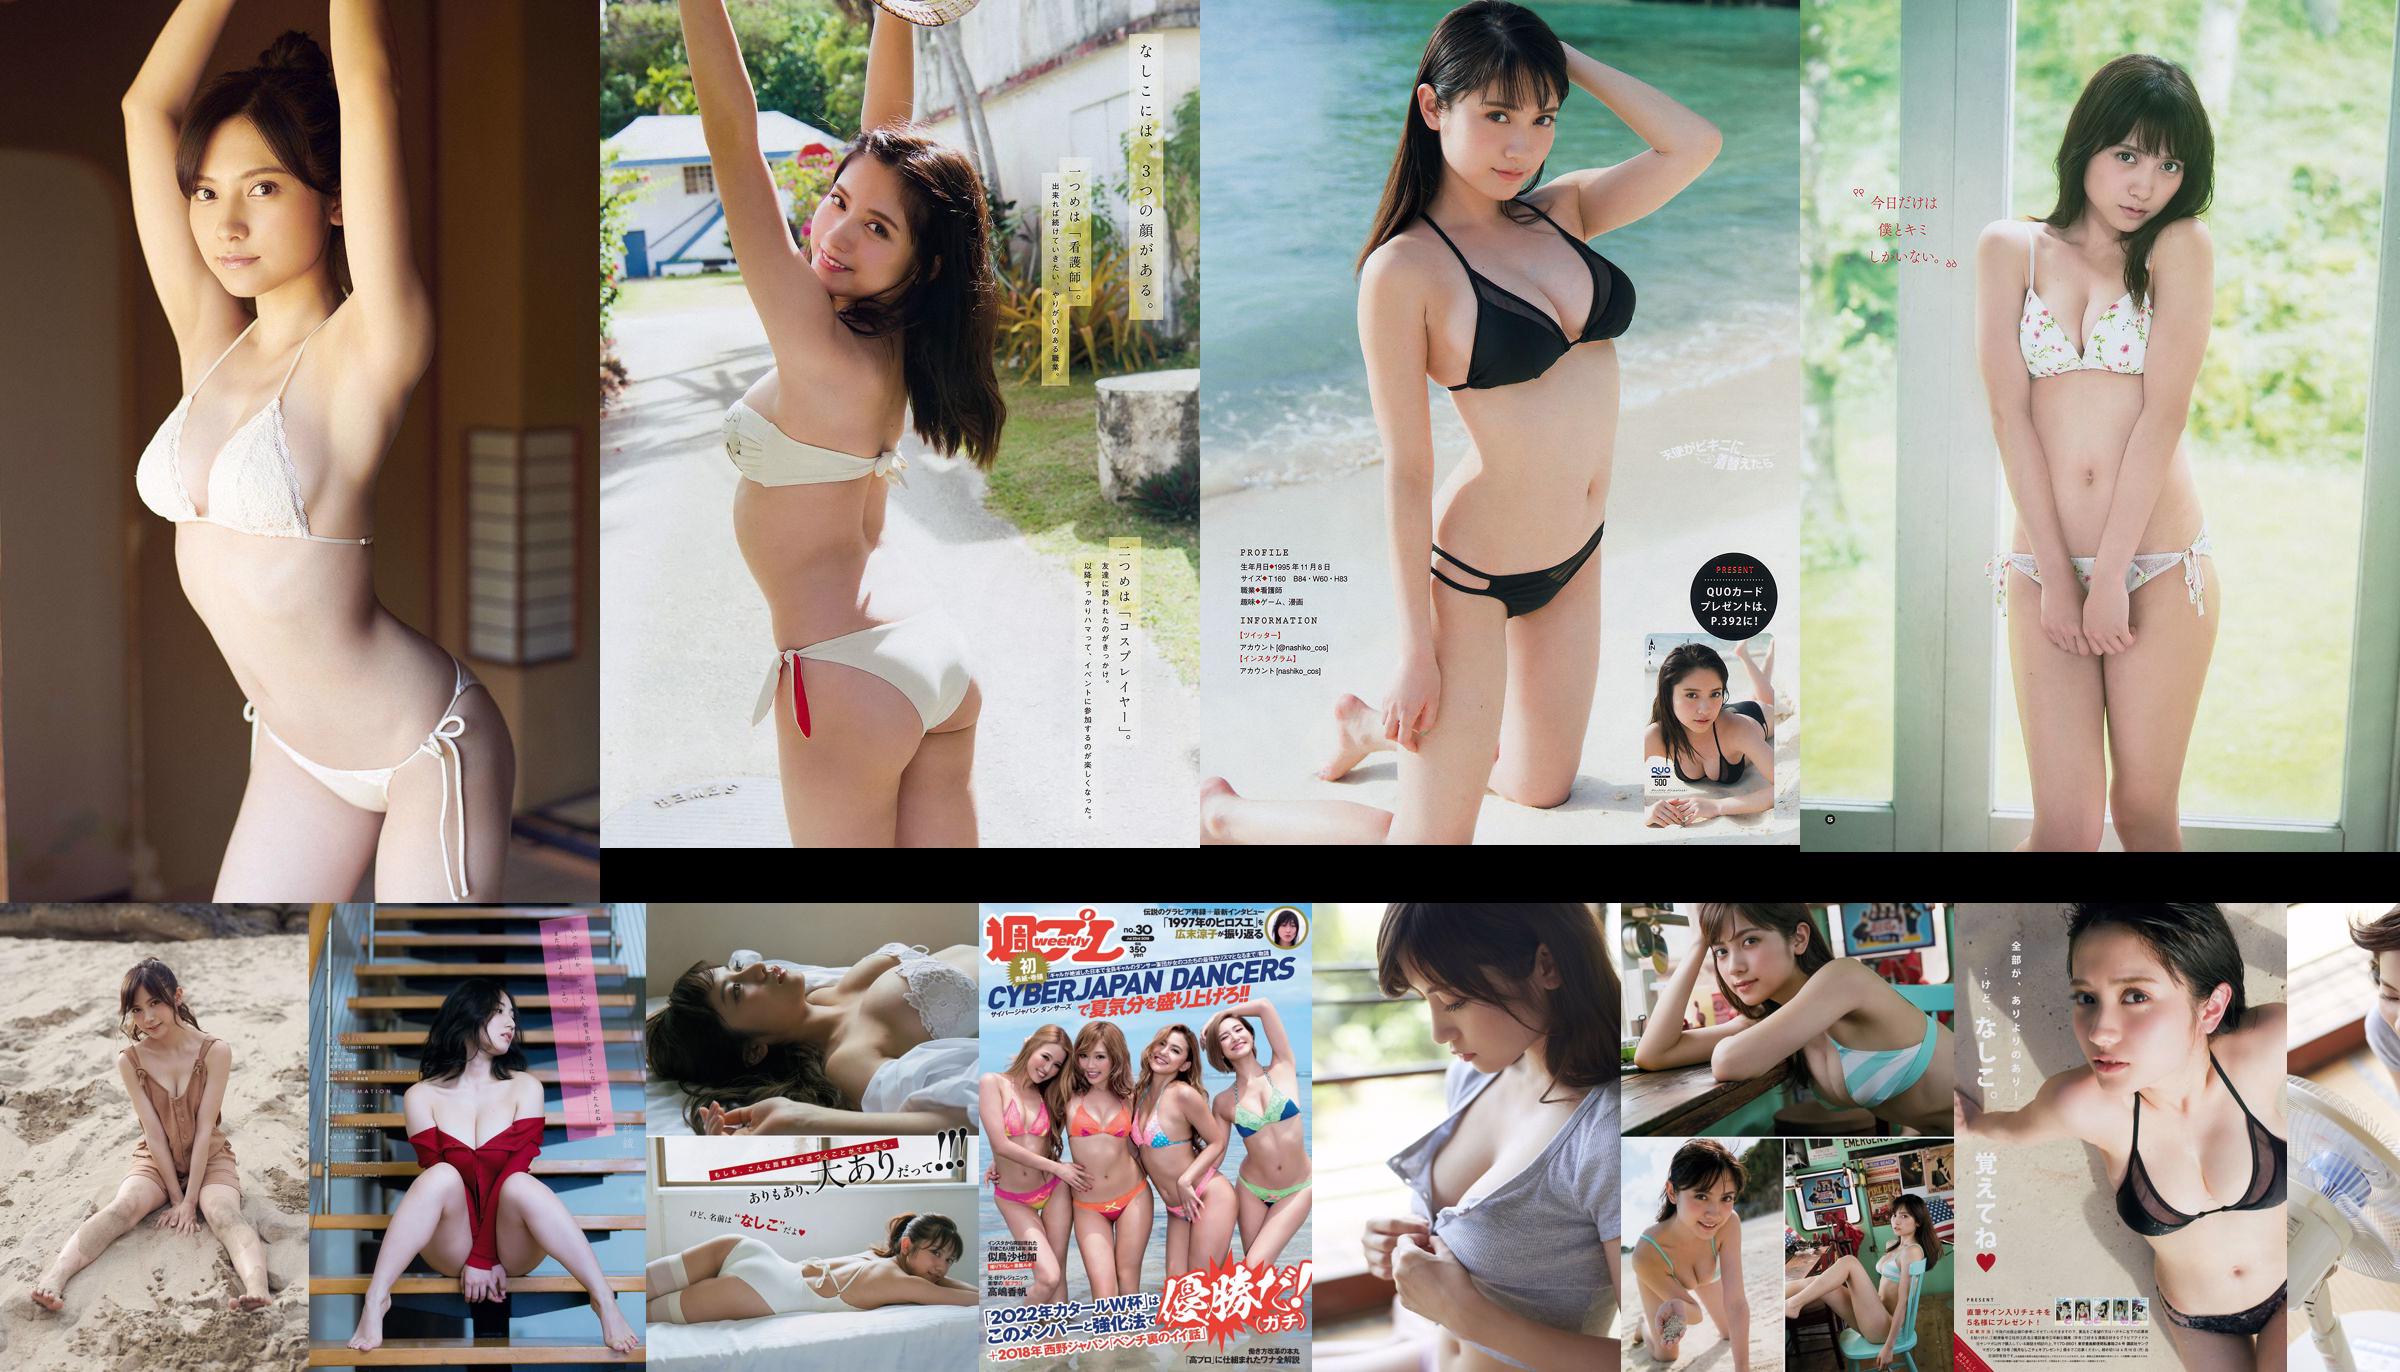 [Revista joven] Nashiko Momotsuki Saaya 2018 No 39 Foto No.9b8aa2 Página 3